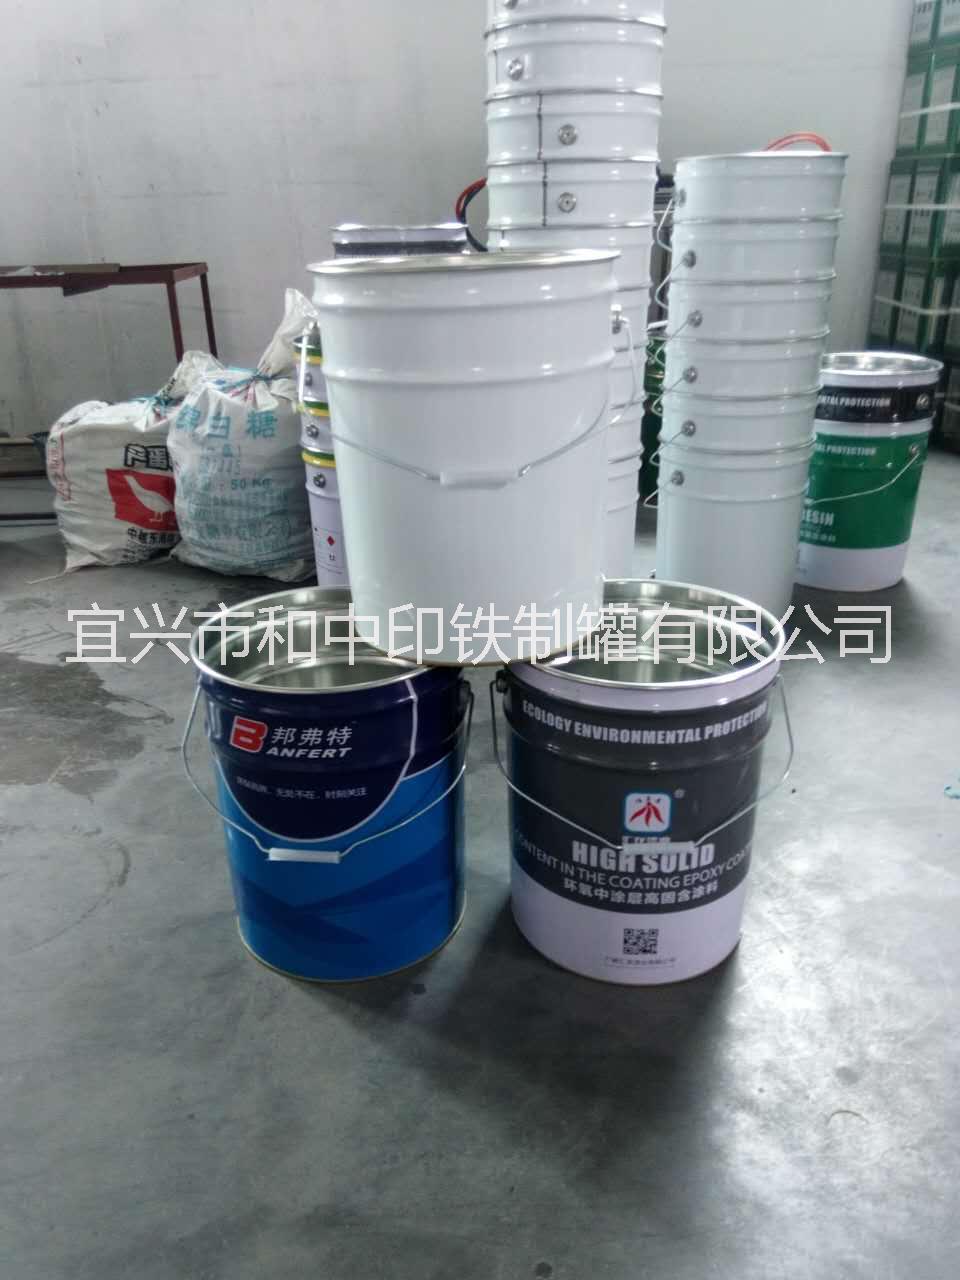 用于油料|涂料|油漆的3-25L铁桶包装 油漆包装桶 油料包装桶 包装桶厂家 江苏包装桶供应商